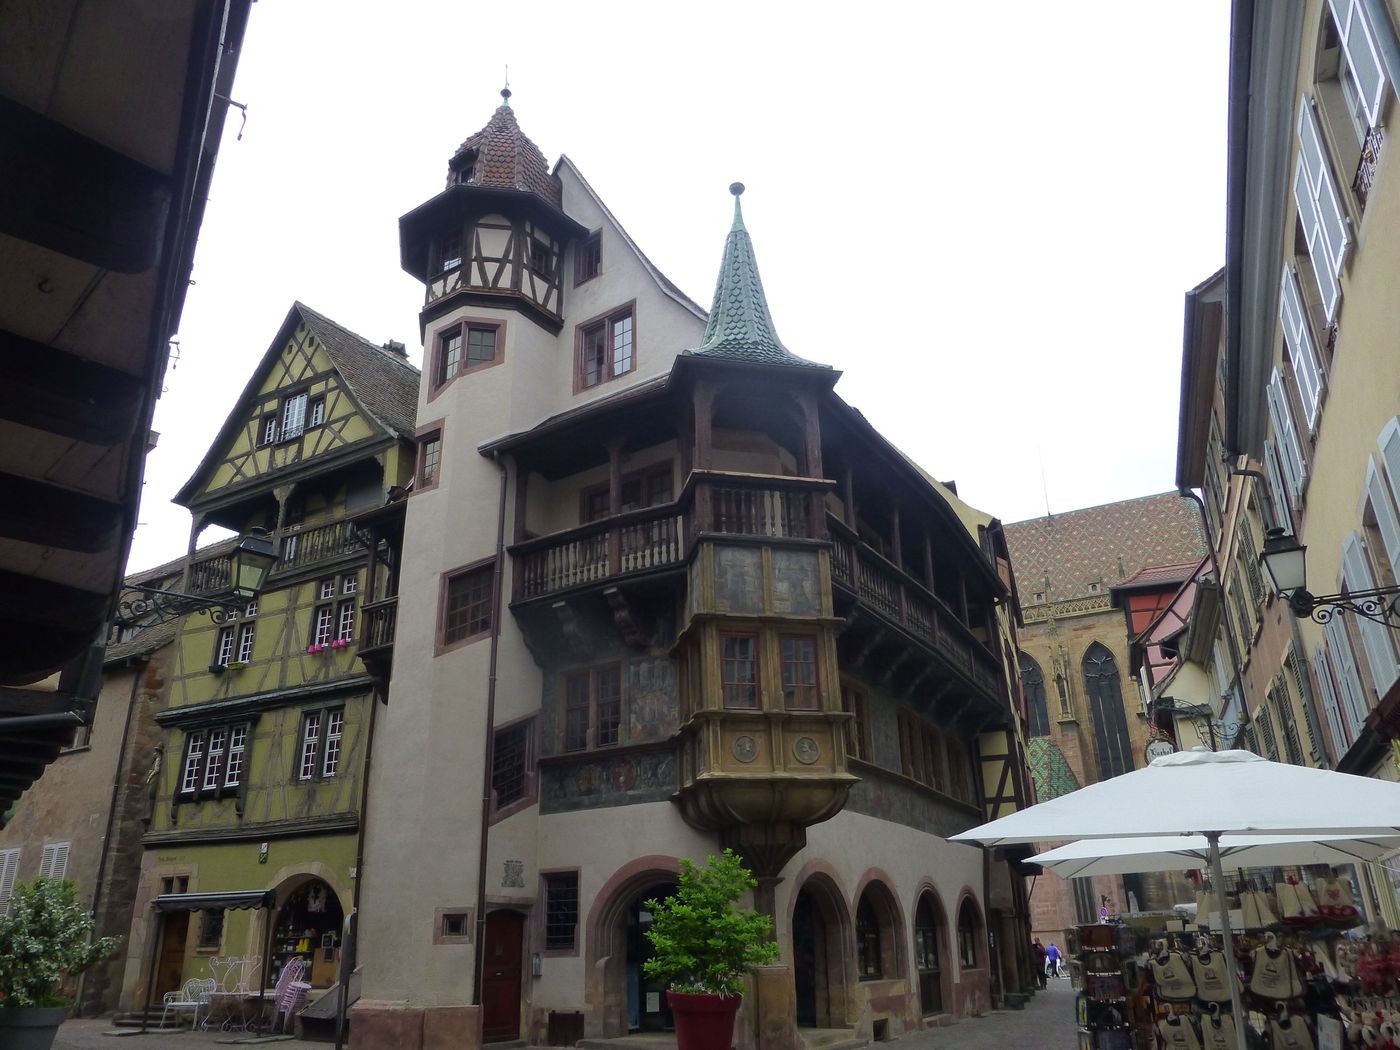 Plus vieille maison de la ville de Colmar